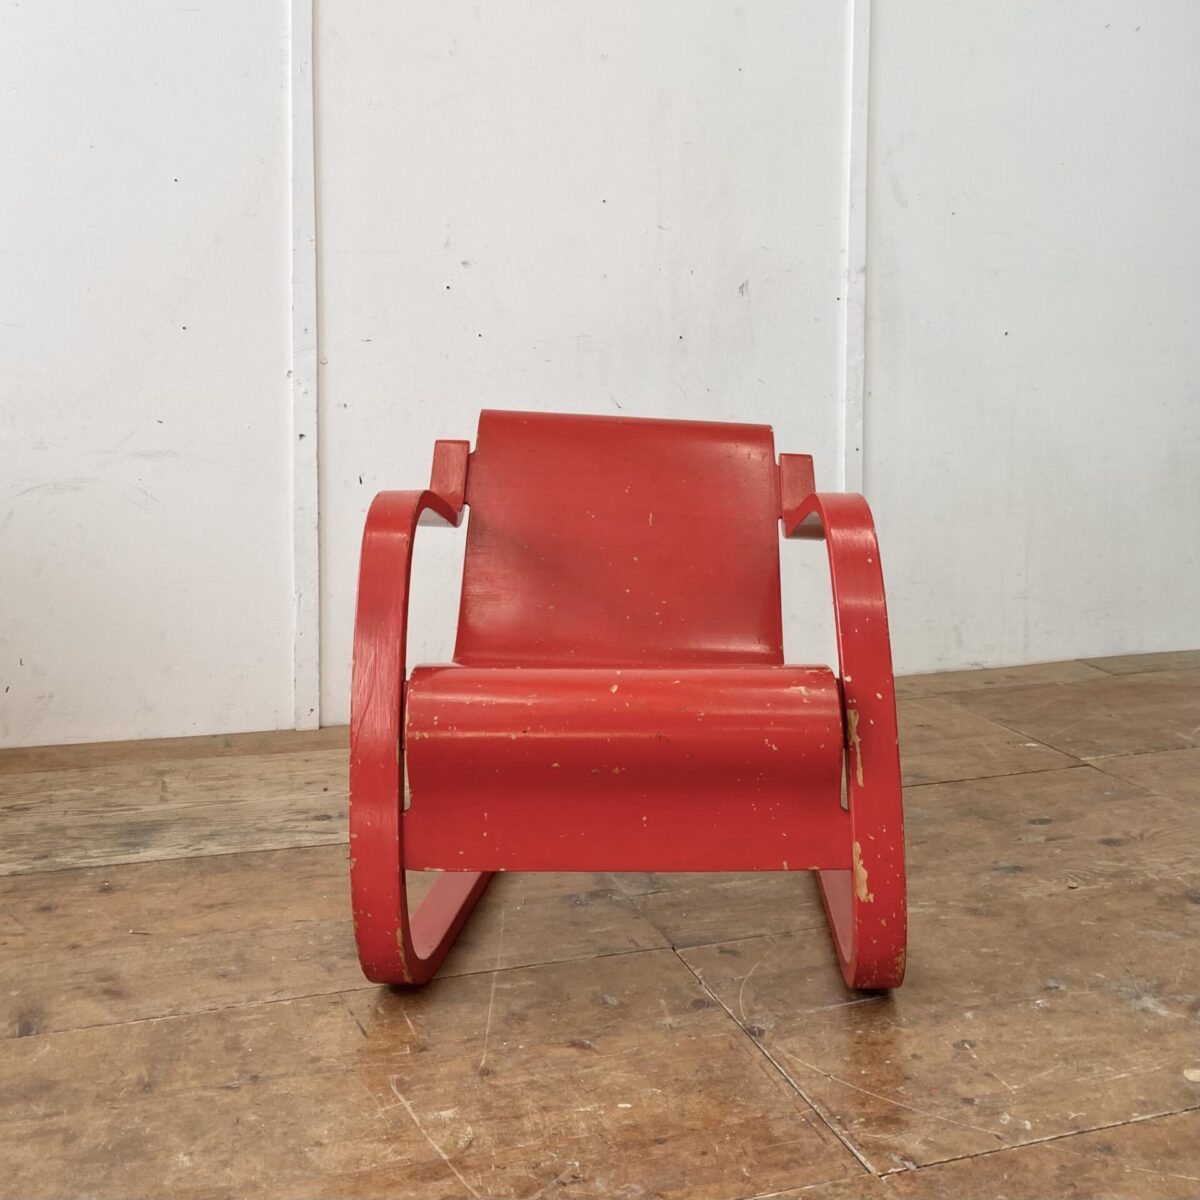 Deuxieme.shop Alvar Aalto Freischwinger Sessel. Modell 31 Birke Formsperrholz. Der Sessel ist etwas asymmetrisch (verzogen) was bei älteren Modellen öfters so ist. Im Bild 4 gut zu sehen. Die rote Farbe ist etwas abgewetzt, und mehrere Farbabplatzer an diversen Stellen. 